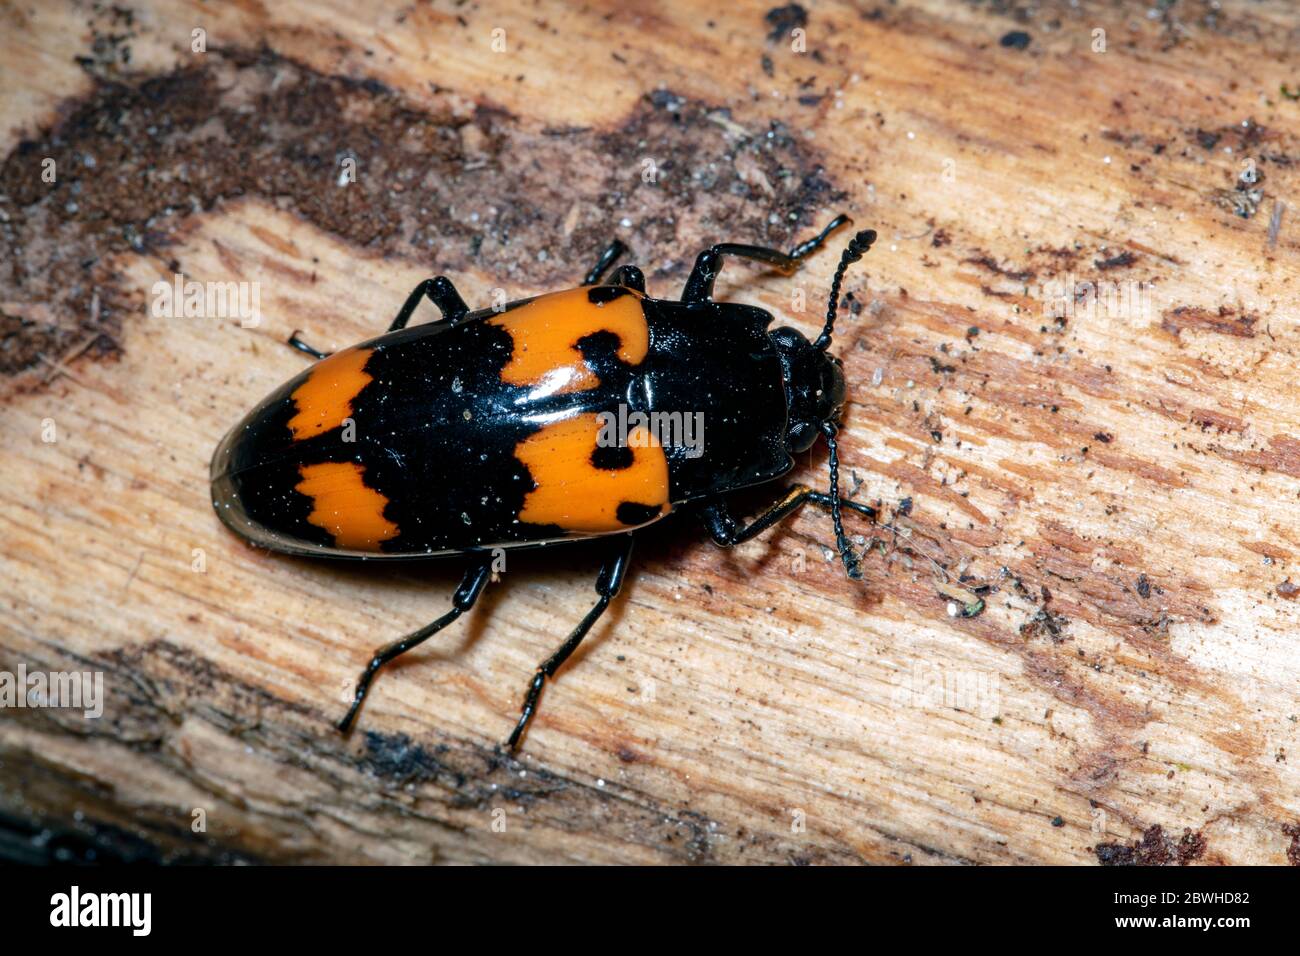 Pique-nique ou SAP Beetle (espèce Glischrochilus) - Pisgah National Forest, Brevard, Caroline du Nord, États-Unis Banque D'Images